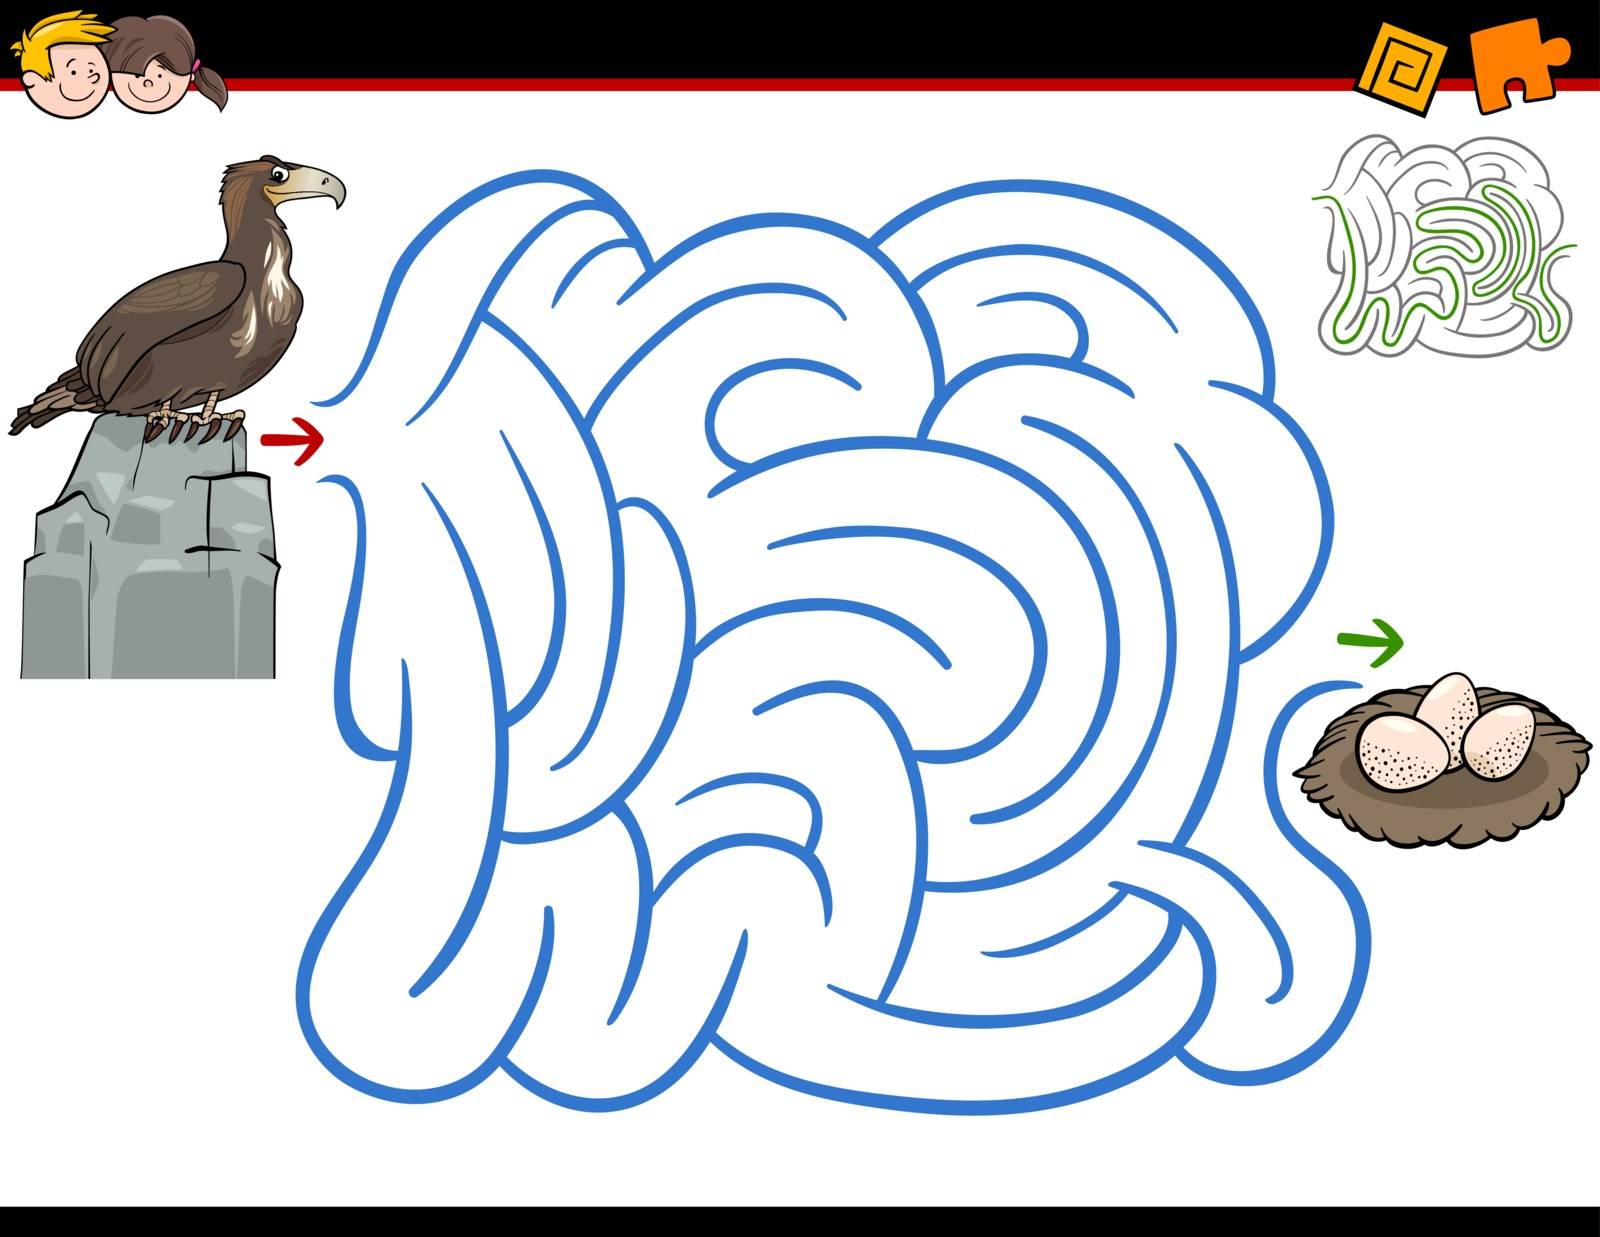 maze activity with eagle by izakowski